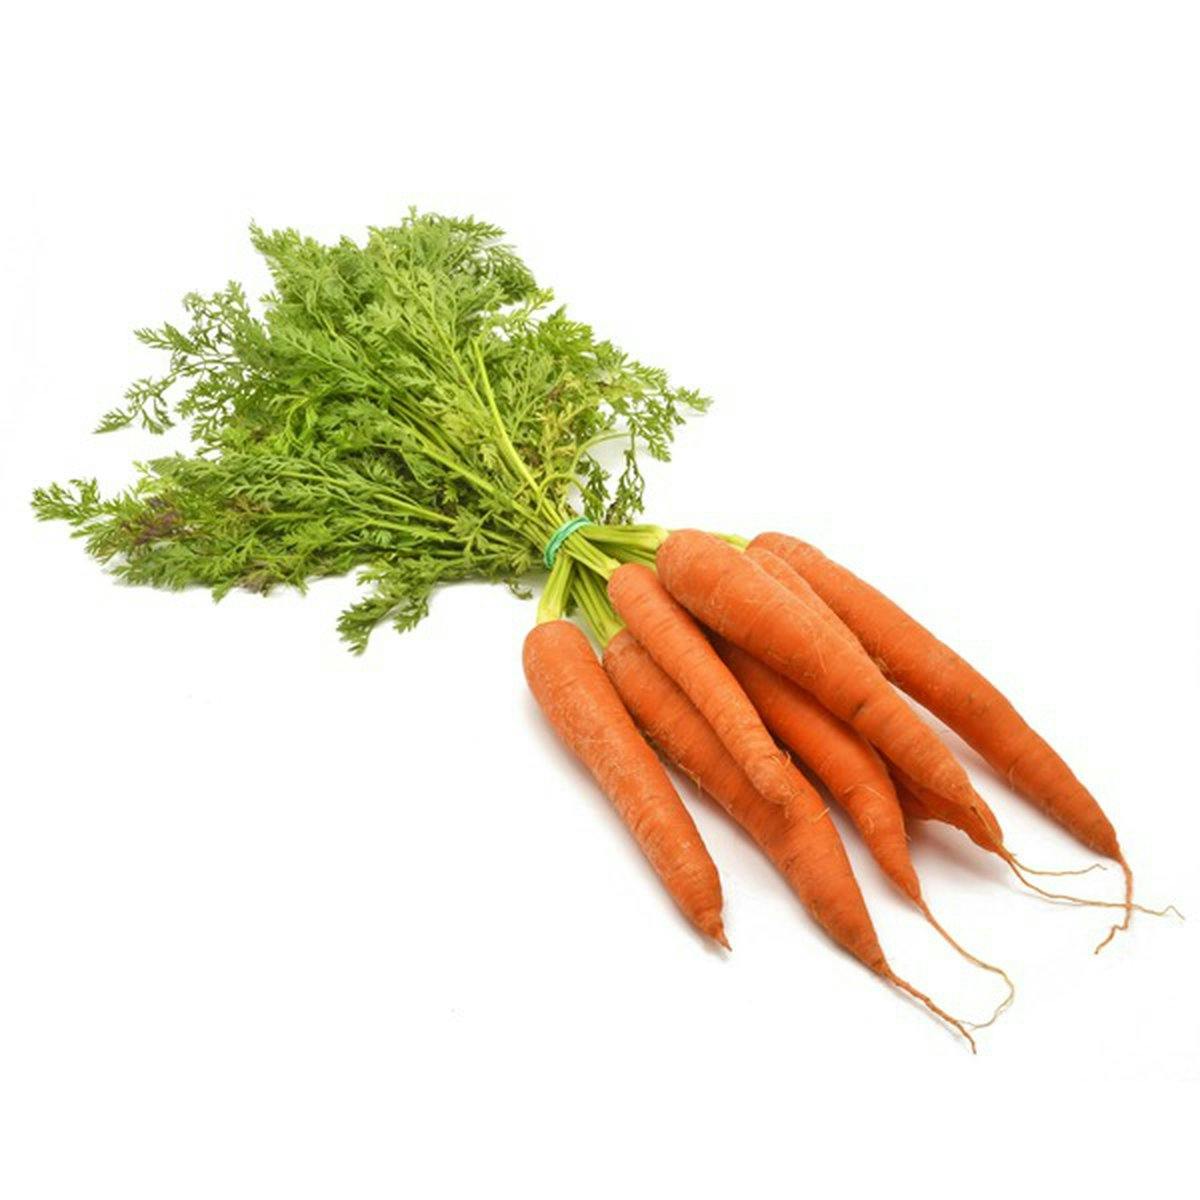 julienne carrot